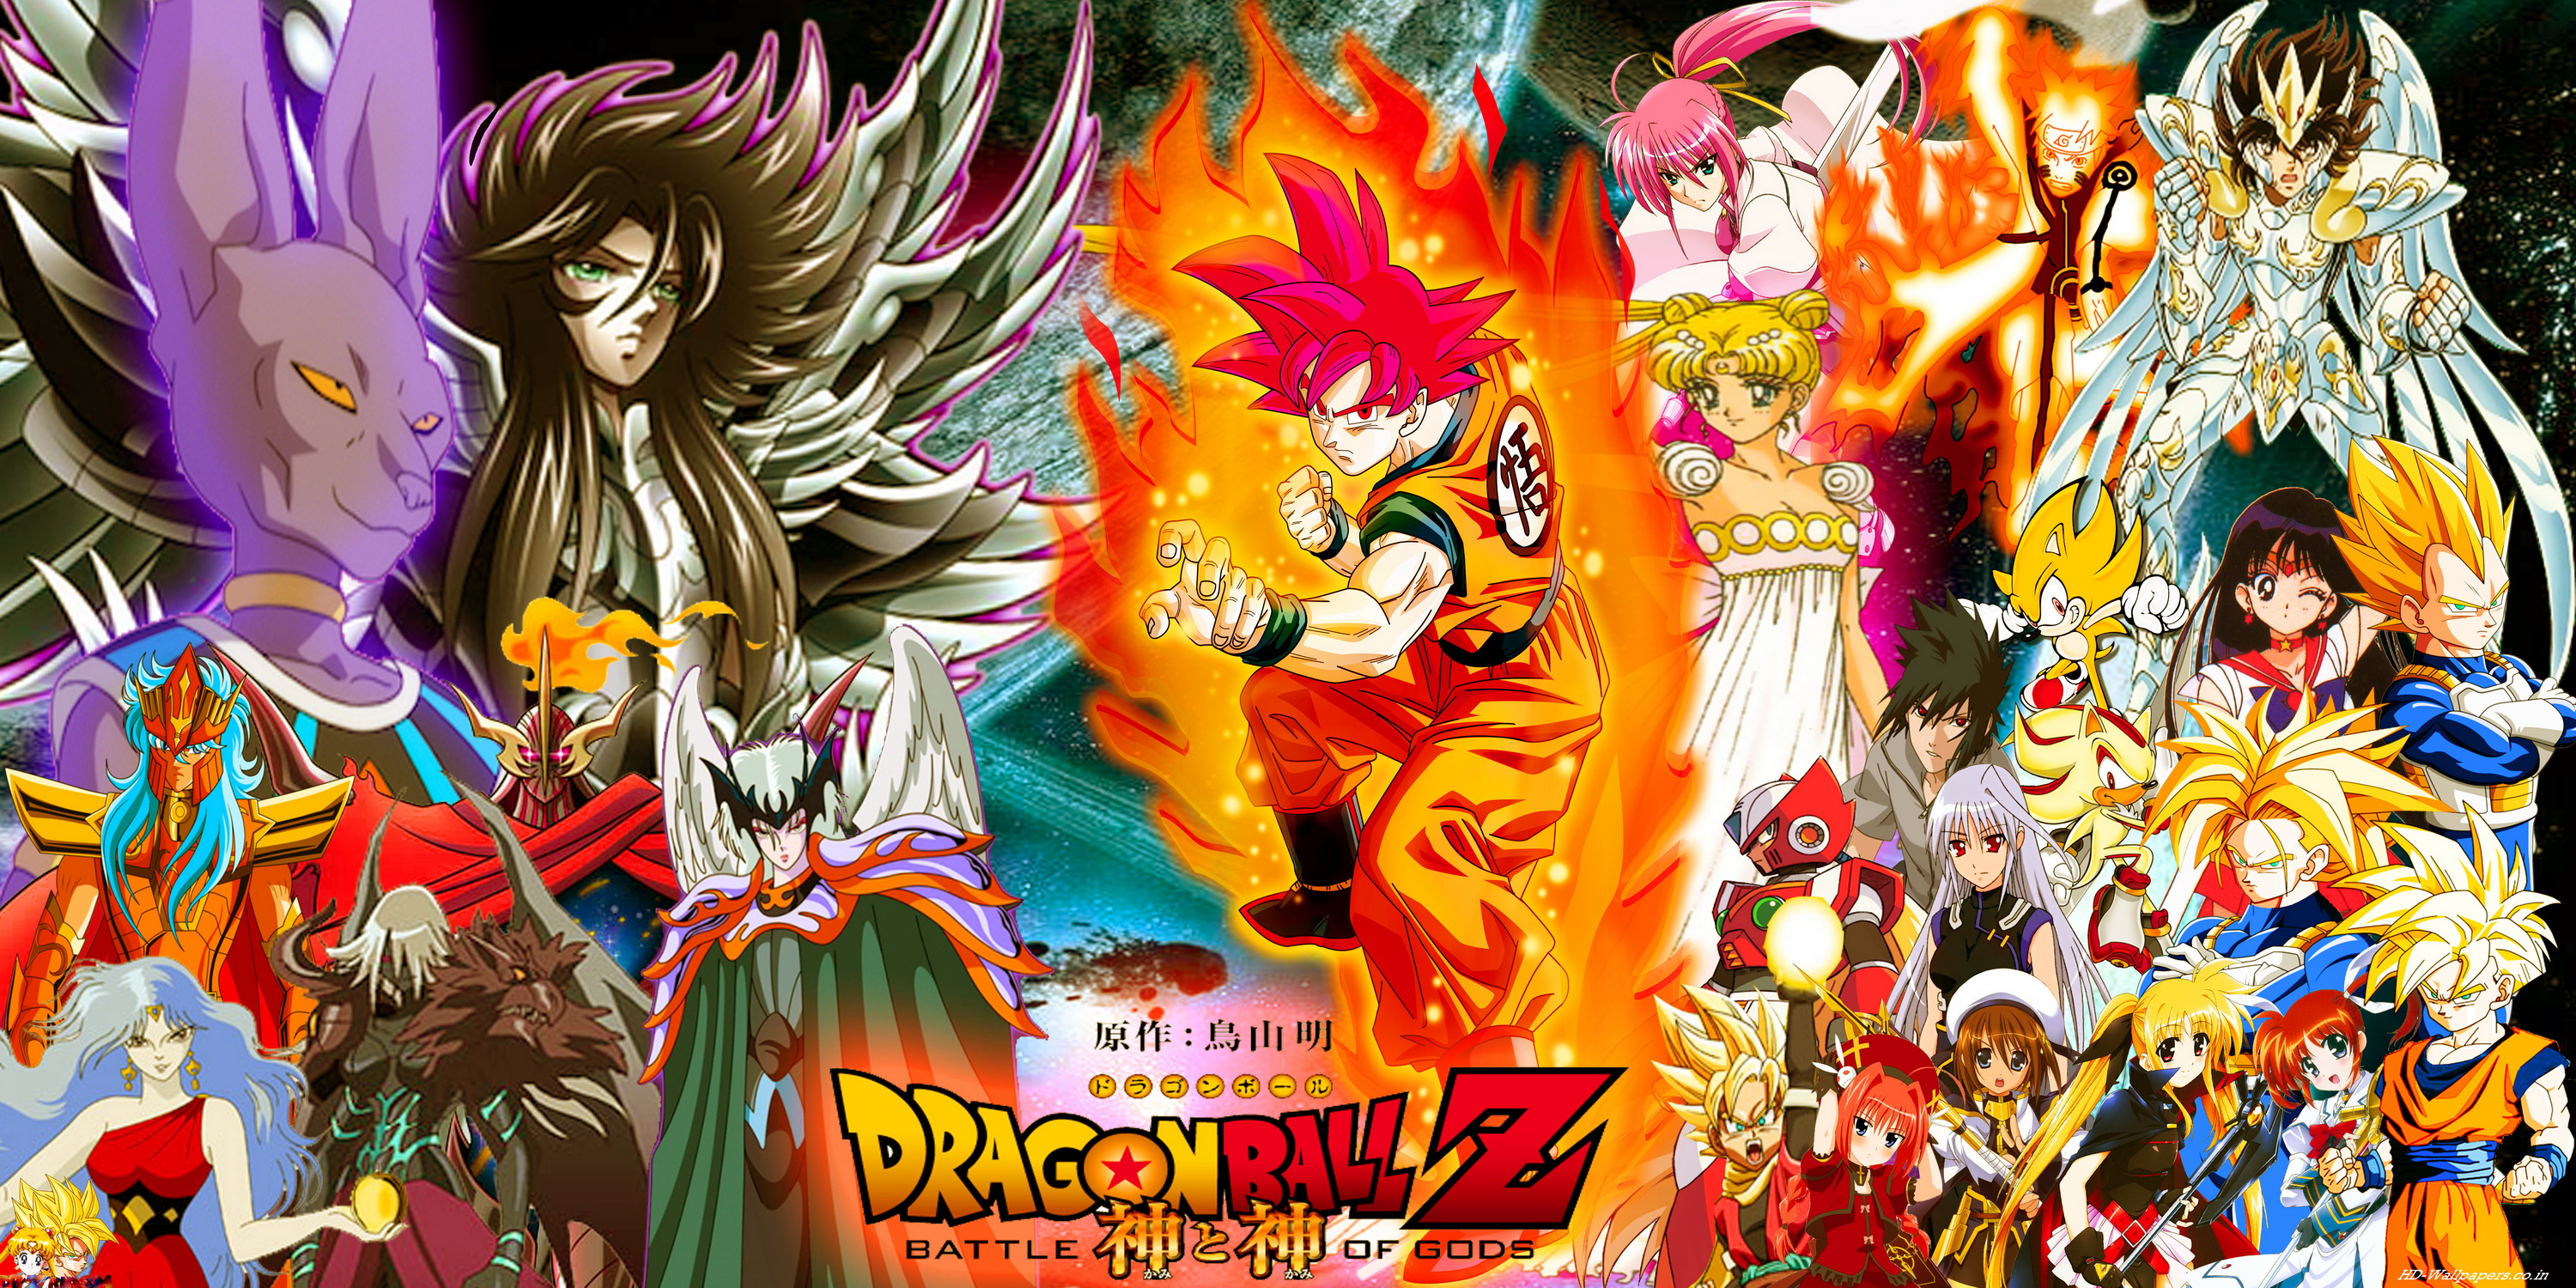 Dragon Ball Wallpaper, Dragon Ball Z, Super Saiyan - Wallpaperforu